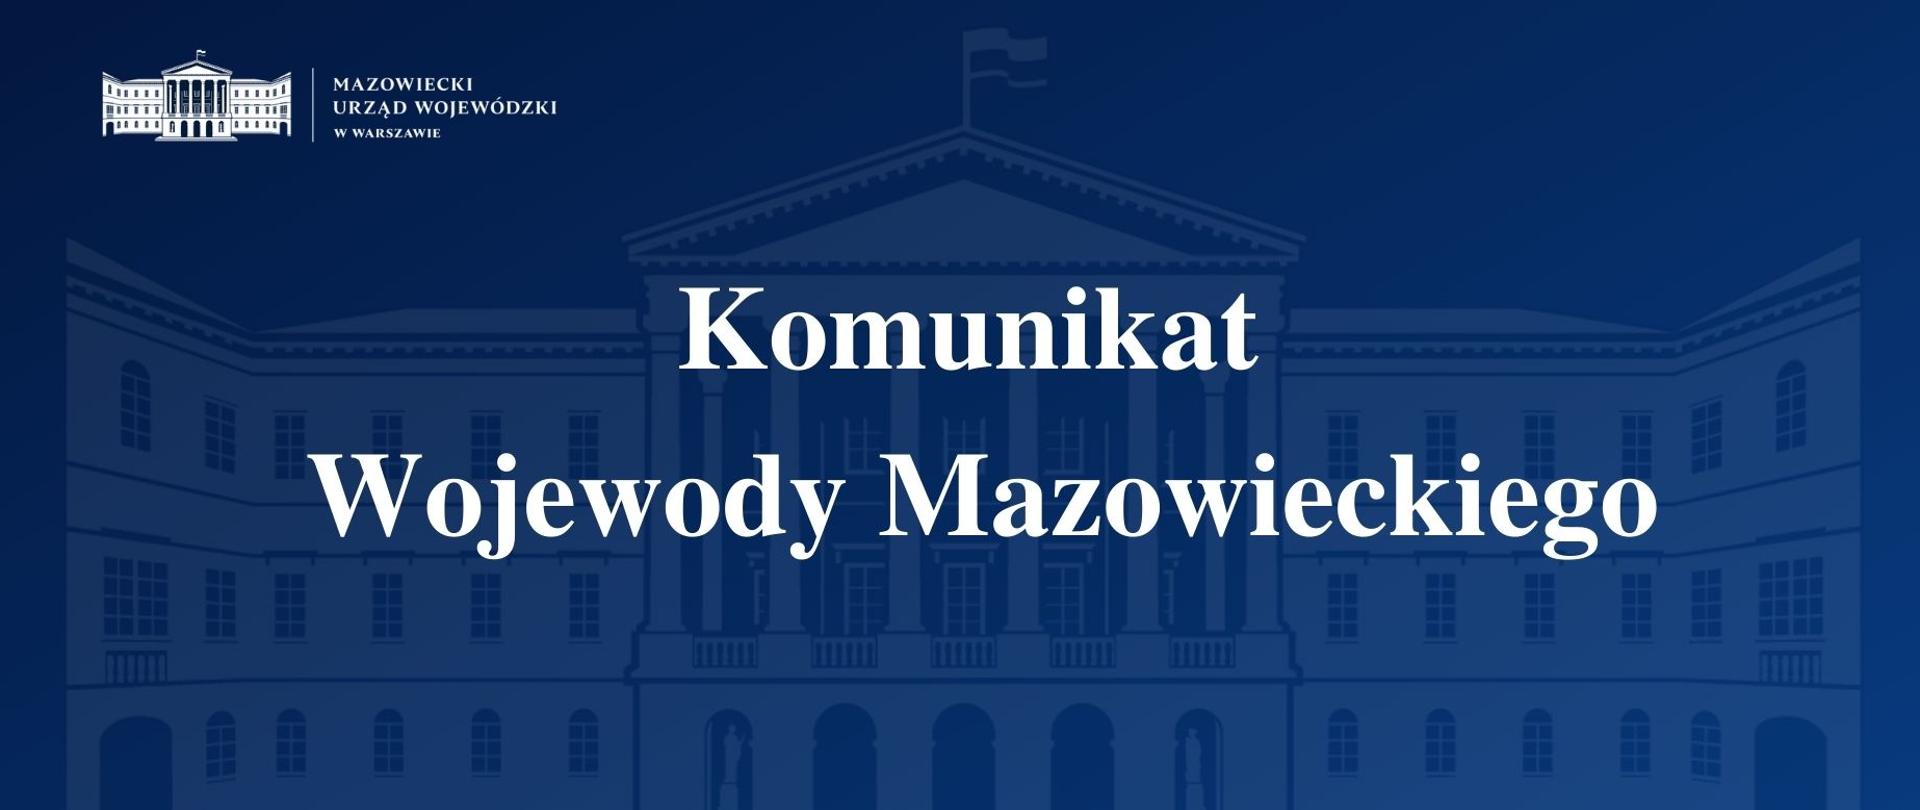 Grafika przedstawia granatową planszę z logo Mazowieckiego Urzędu Wojewódzkiego w Warszawie i napisem "Komunikat Wojewody Mazowieckiego".